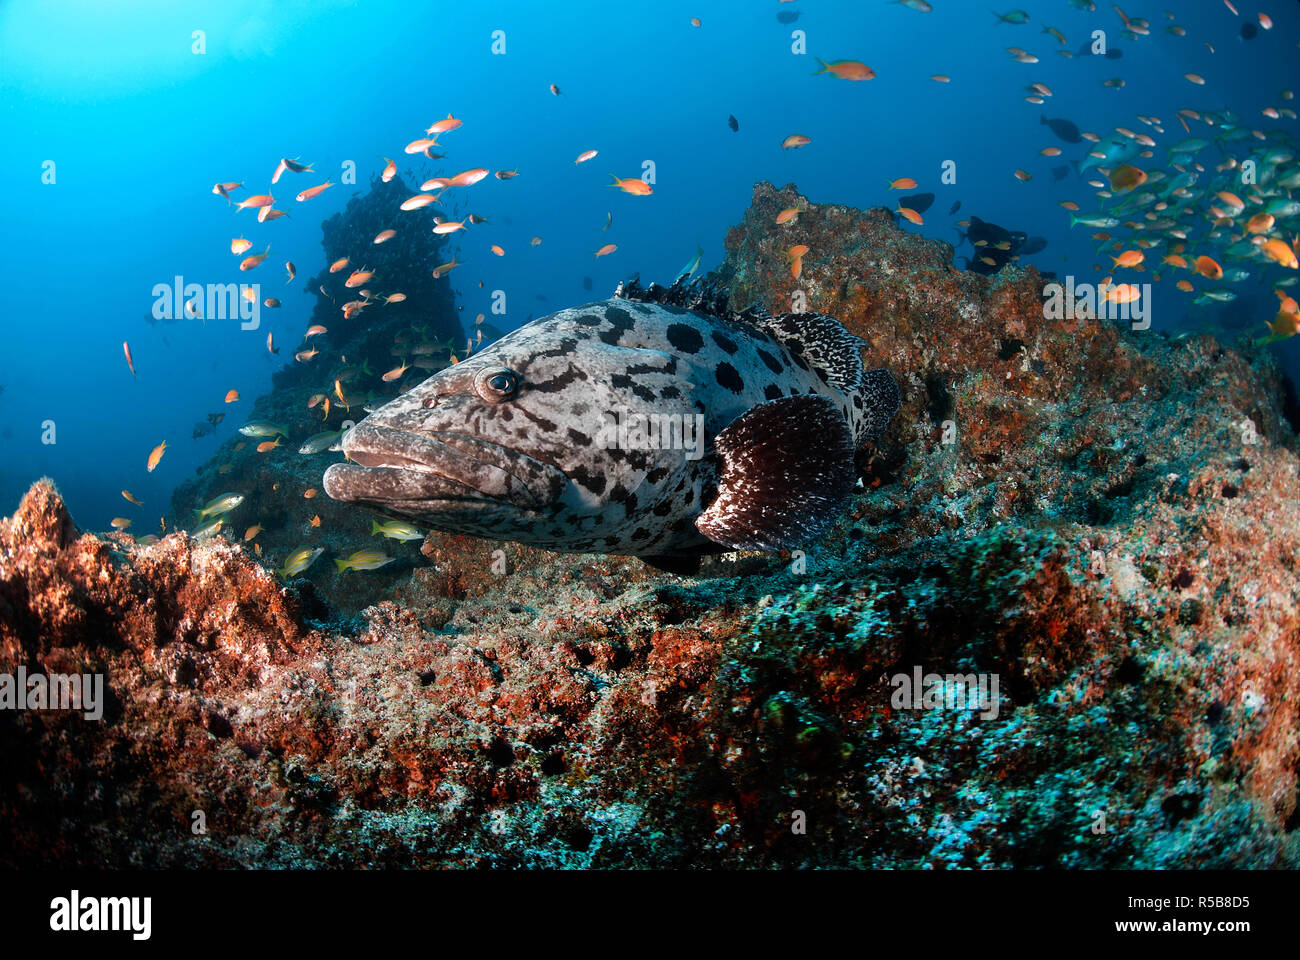 Potato cod, Potato grouper or Giant Grouper (Epinephelus tukula), at a coral reef, Tofo, Mosambique Stock Photo